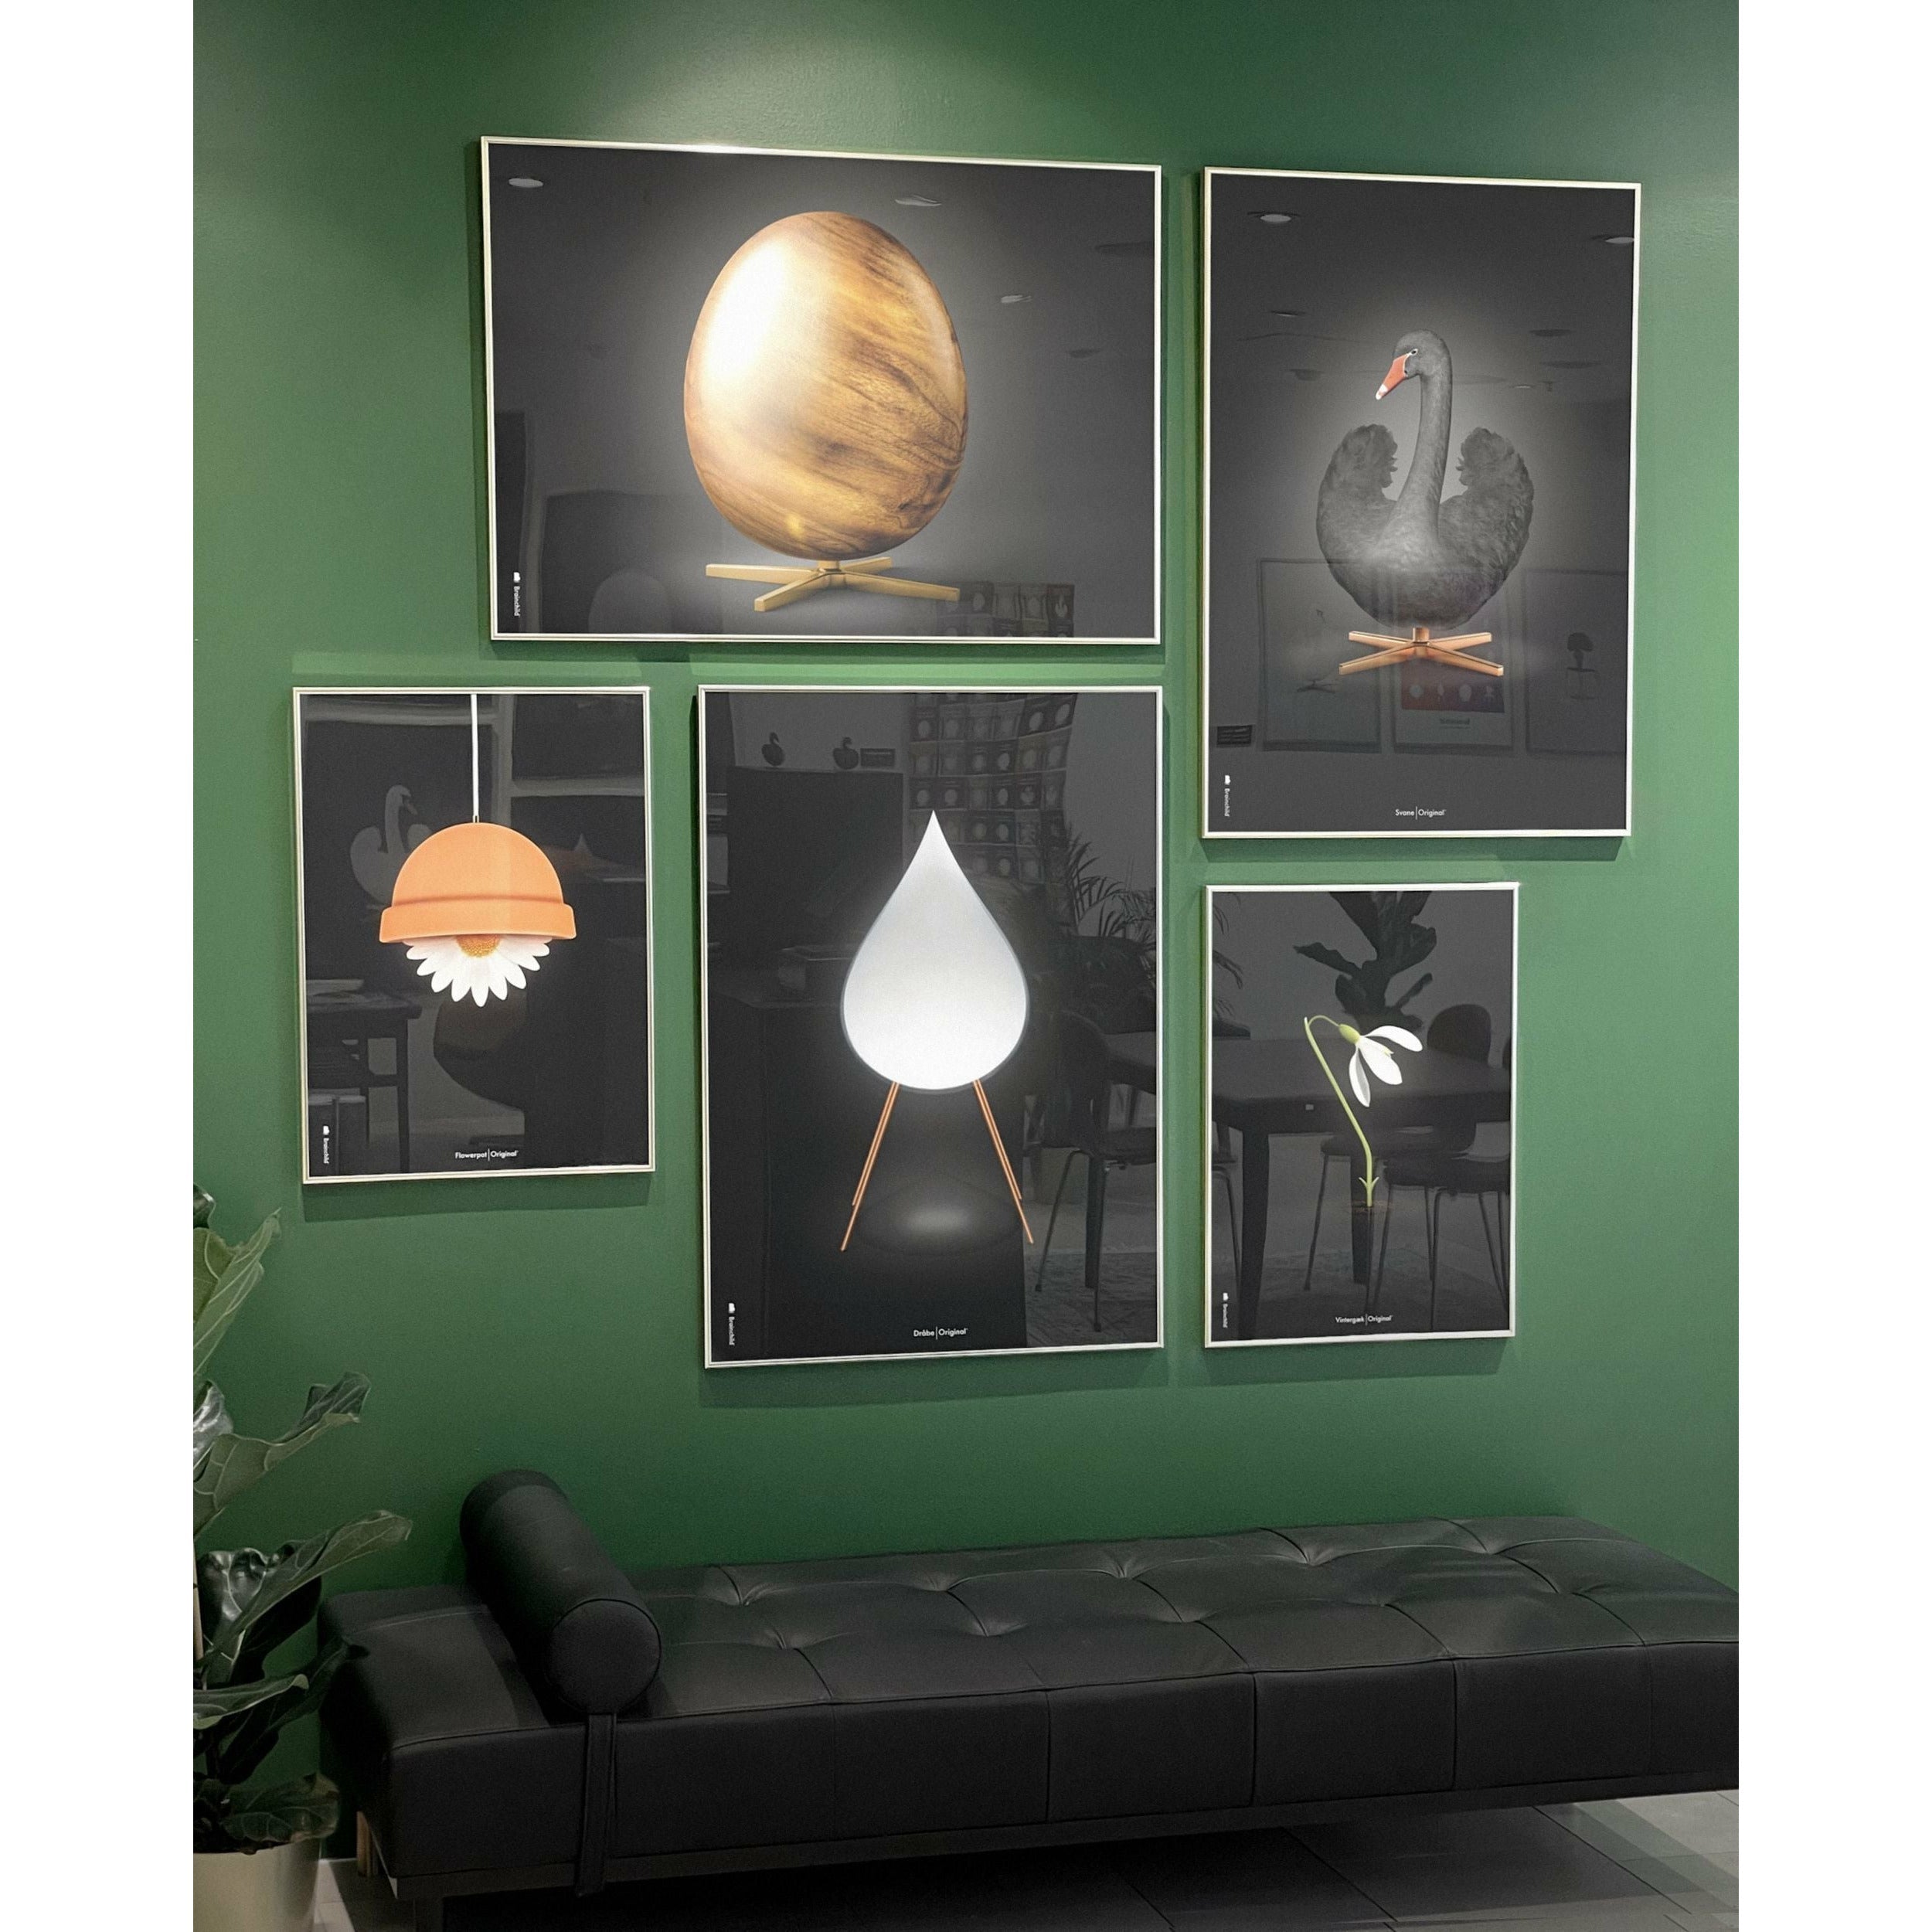 brainchild Eierkruisindeling Poster zonder frame 30 x40 cm, zwart